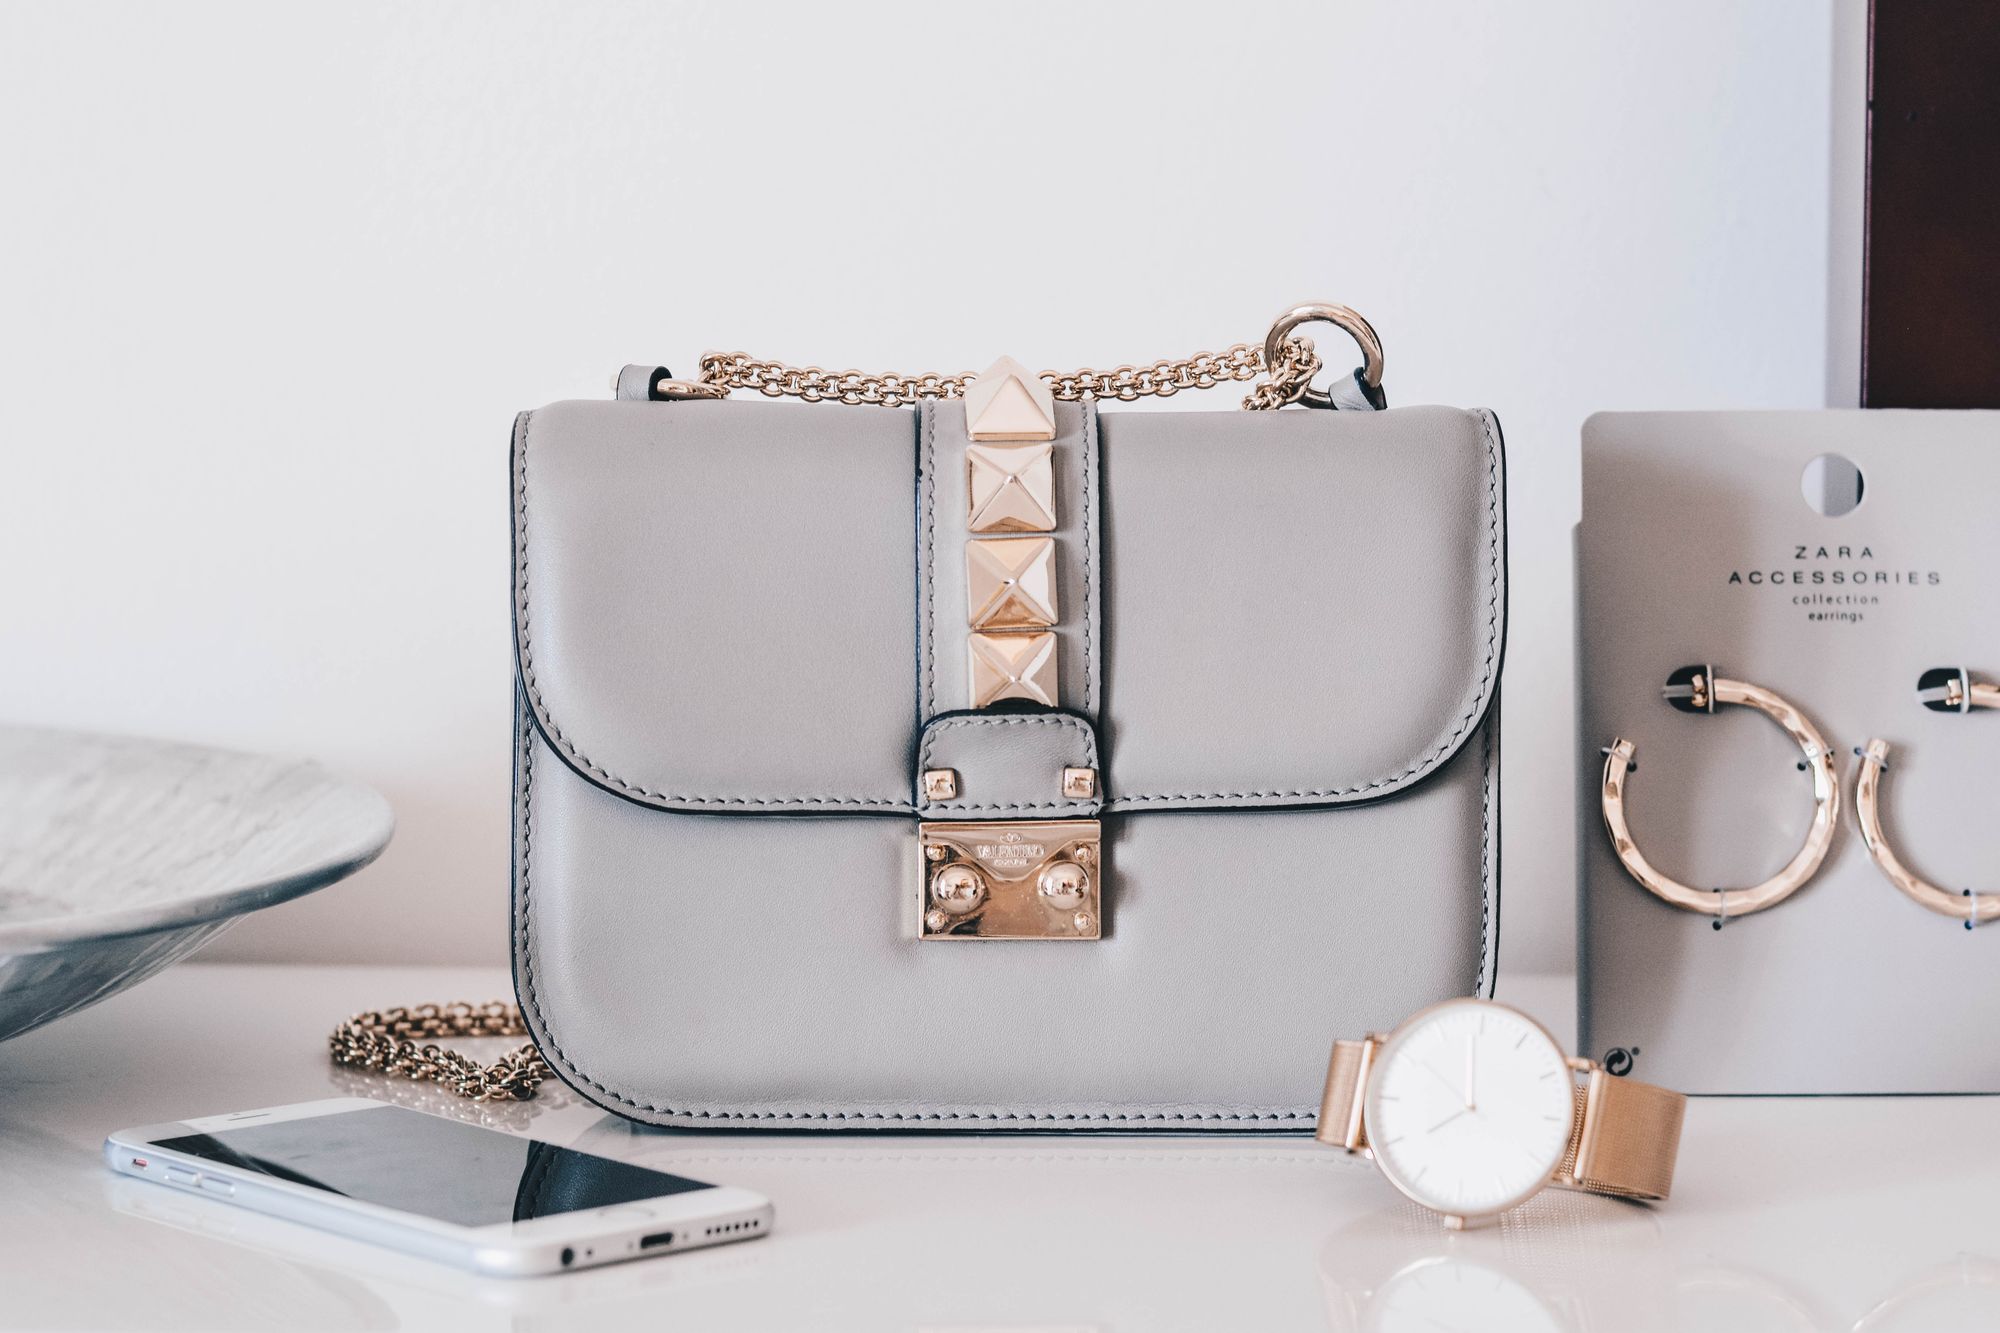 How to Spot a Fake Designer Handbag